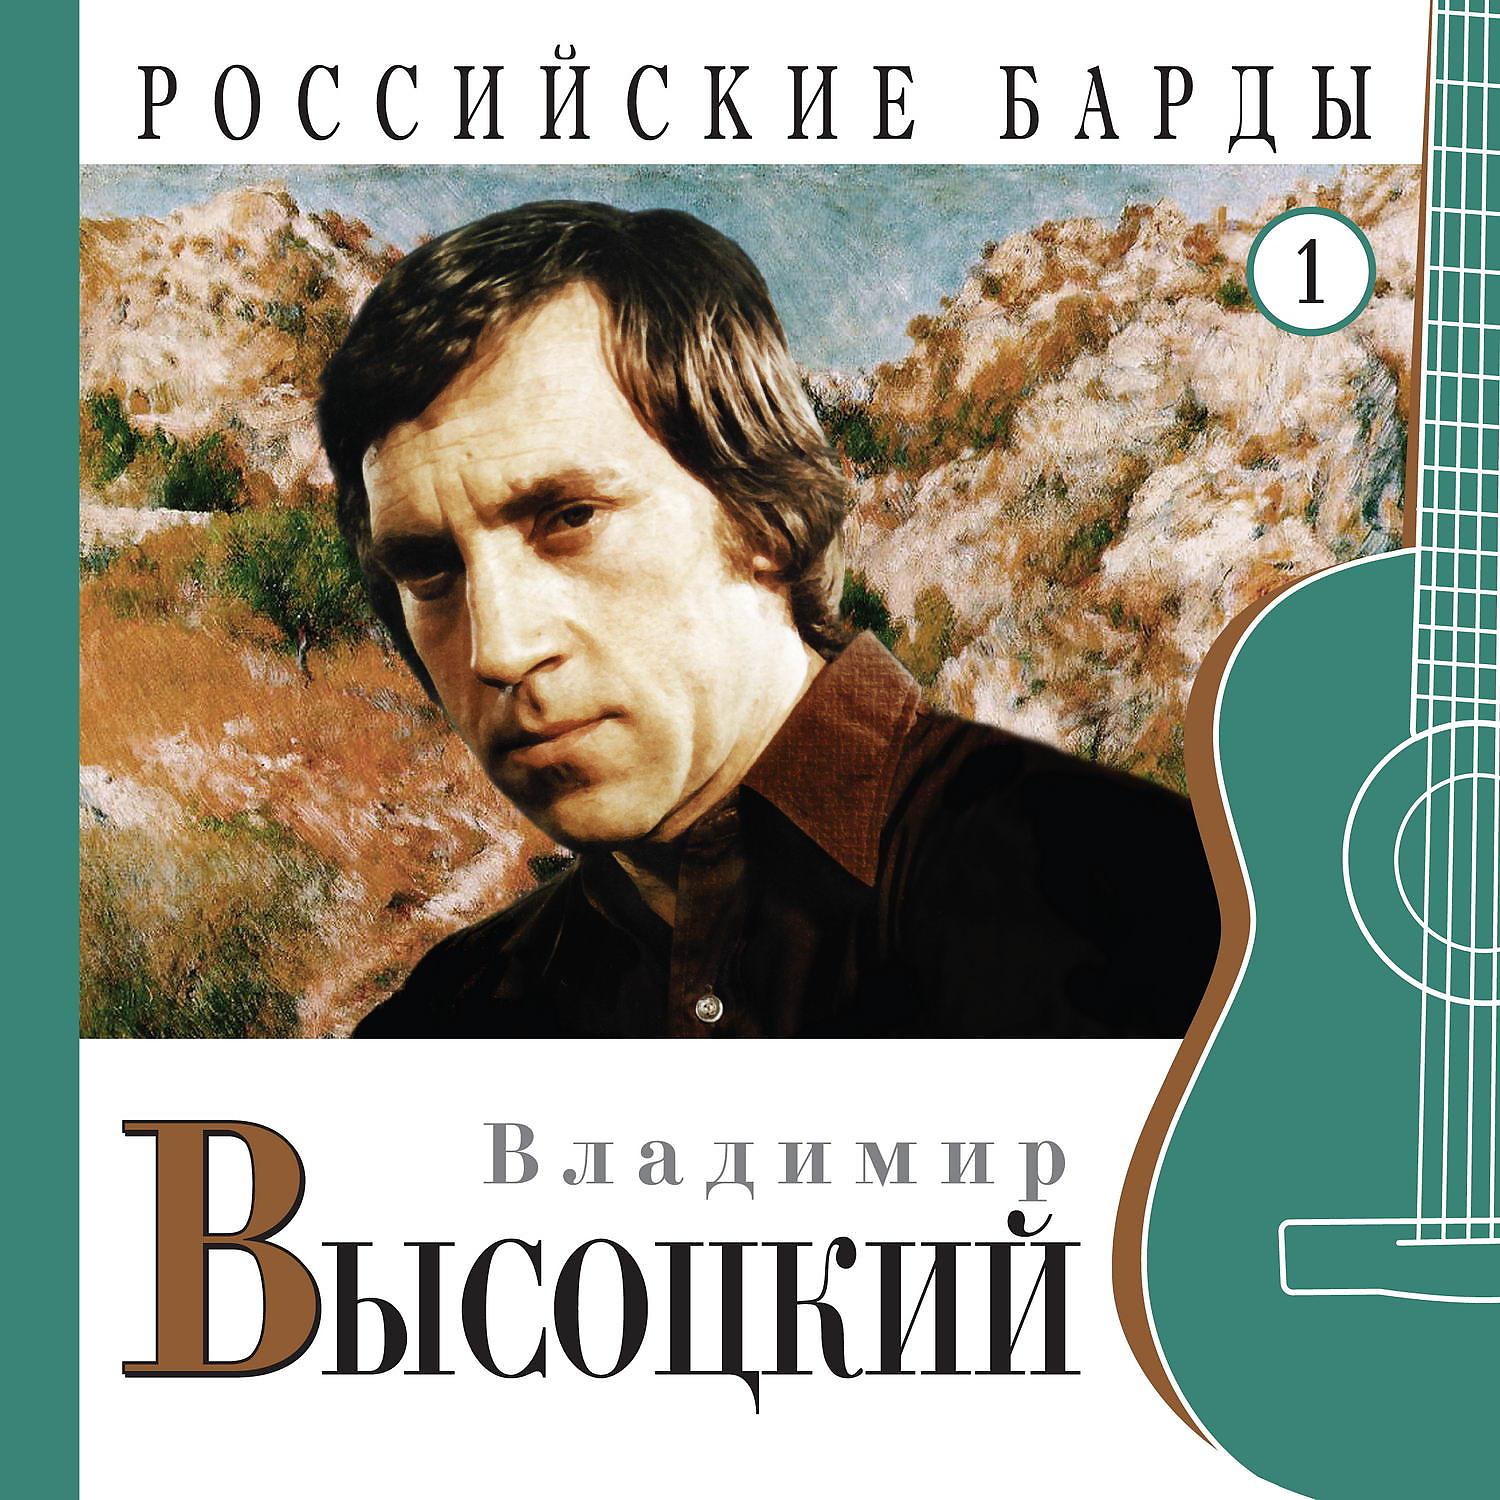 Постер альбома Владимир Высоцкий. Российские барды. Часть 1